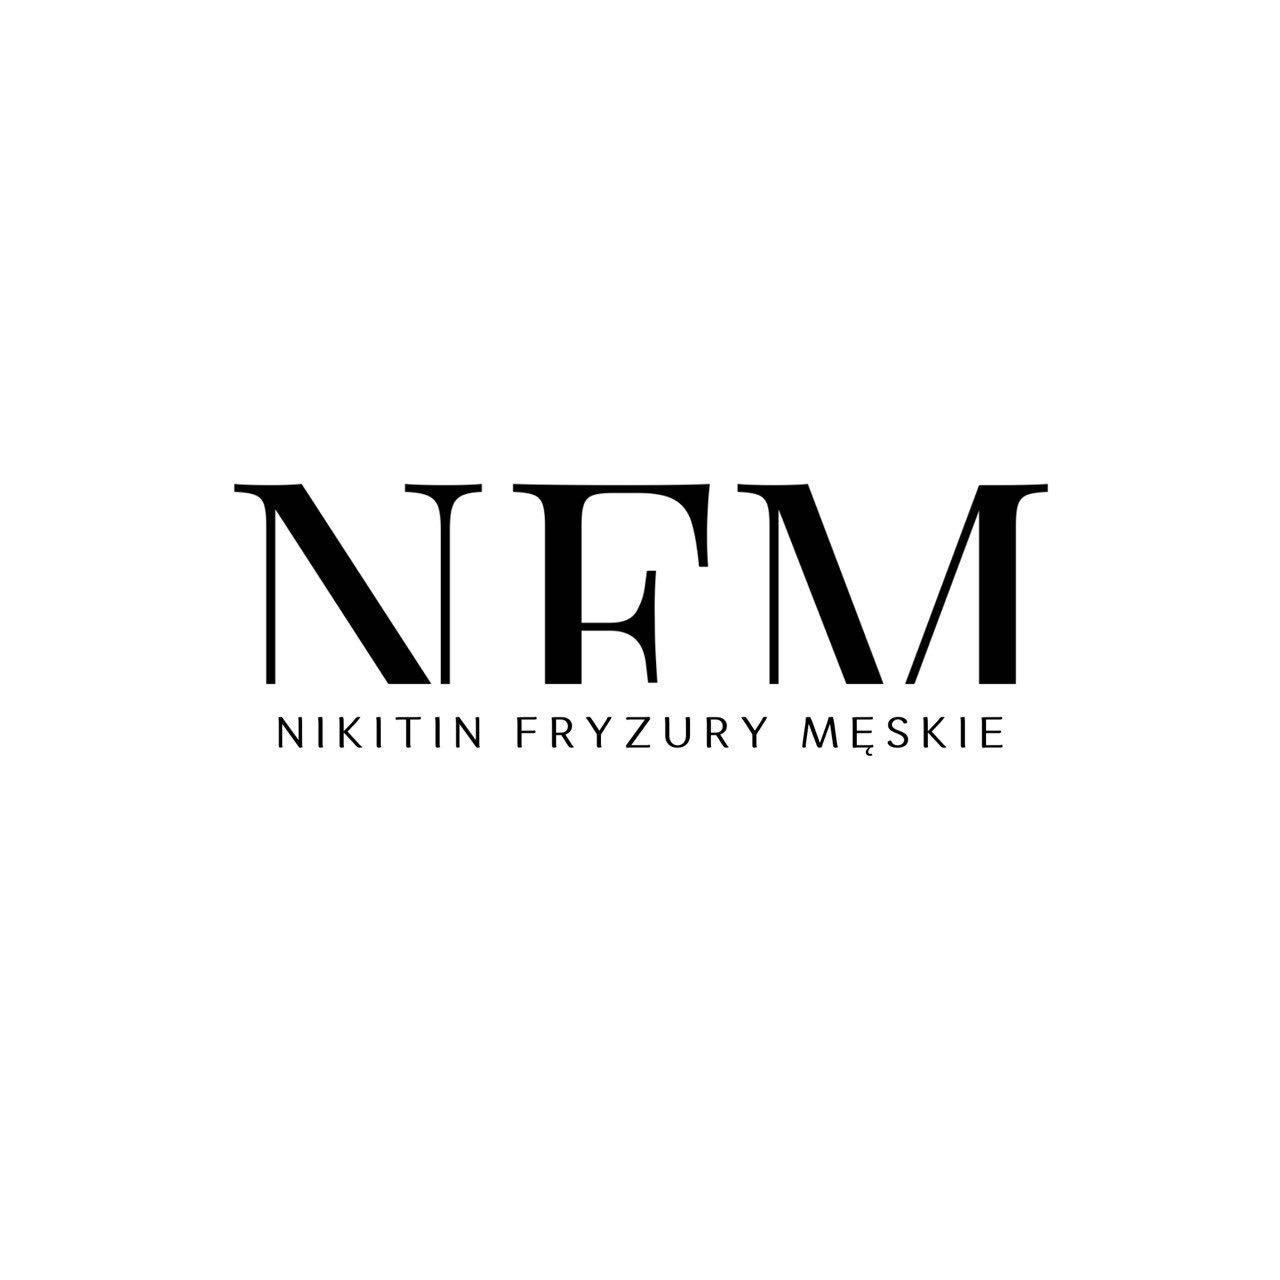 NFM - Nikitin Fryzury Męskie, Dąbska 18D/U2, NFM - Nikitin Fryzury Męskie, 31-572, Kraków, Nowa Huta